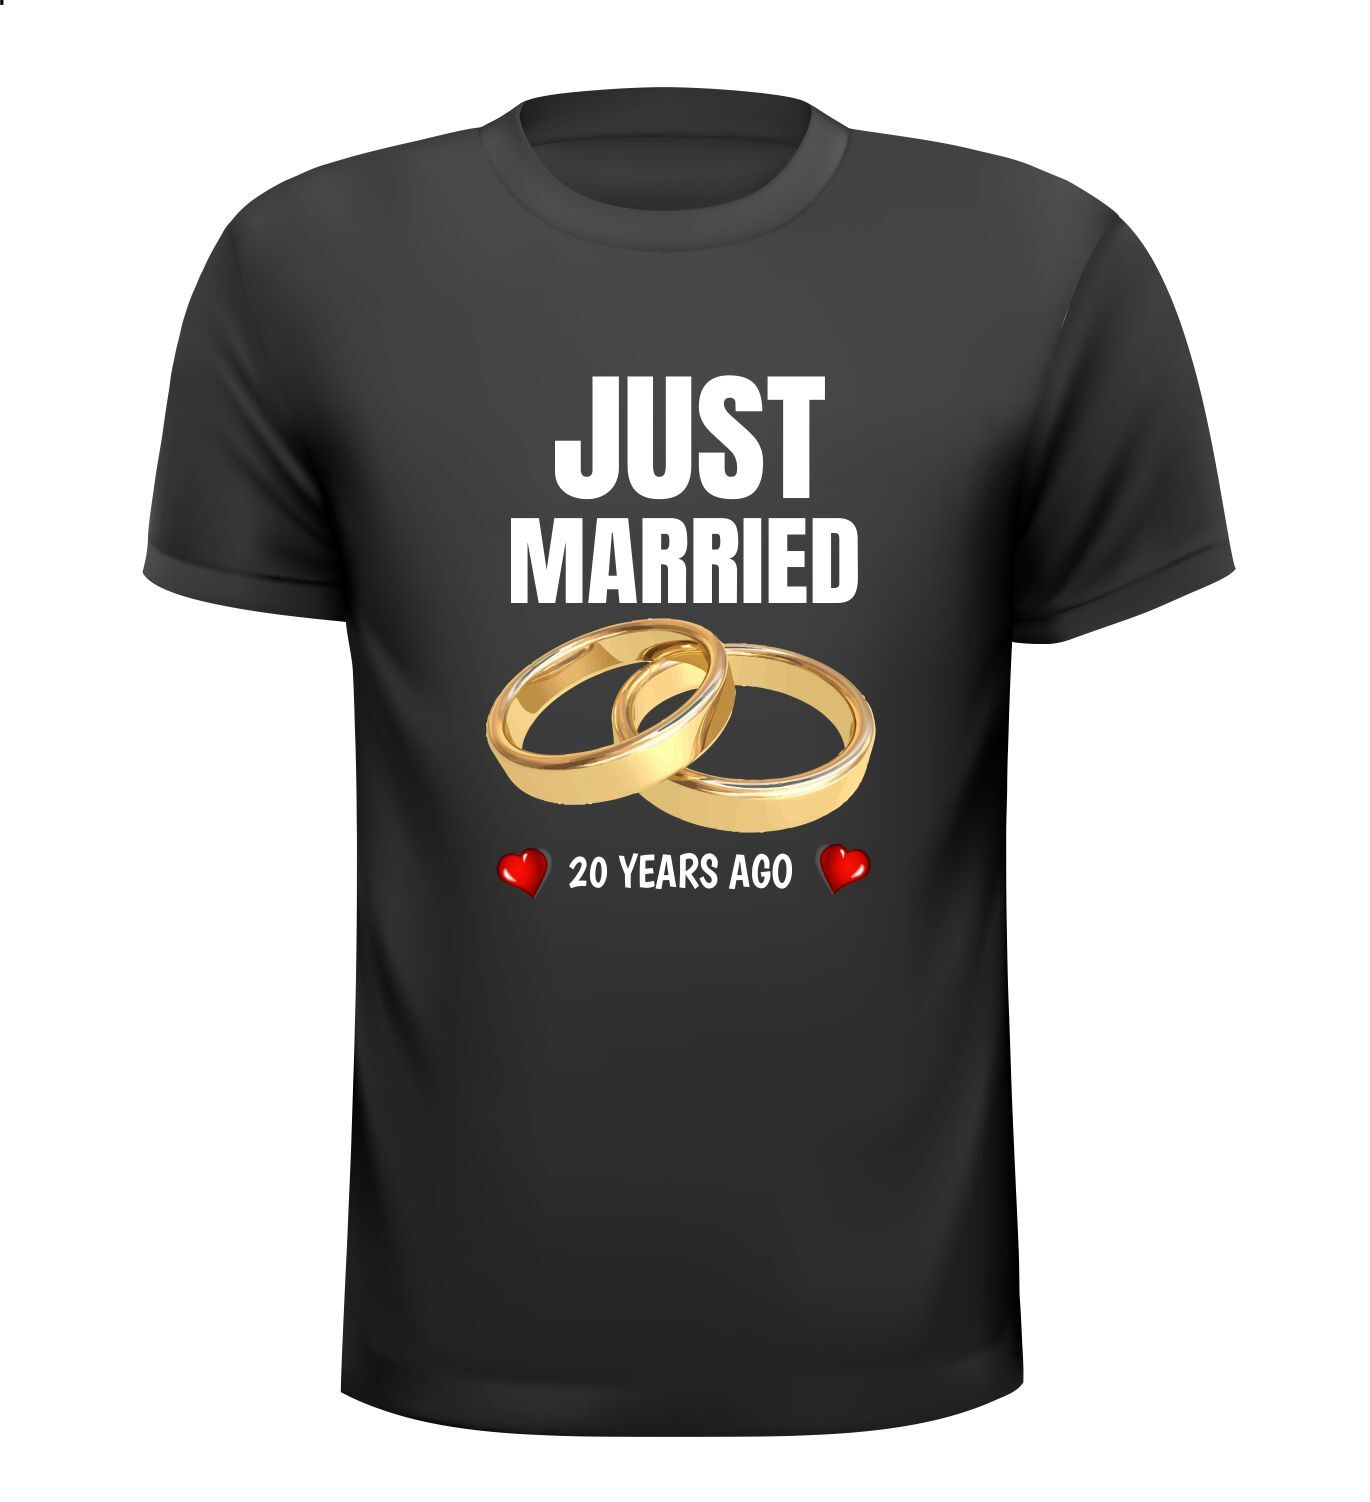 T-shirt Just Married 20 years ago pas getrouwd 20 jaar geleden jaar geleden!